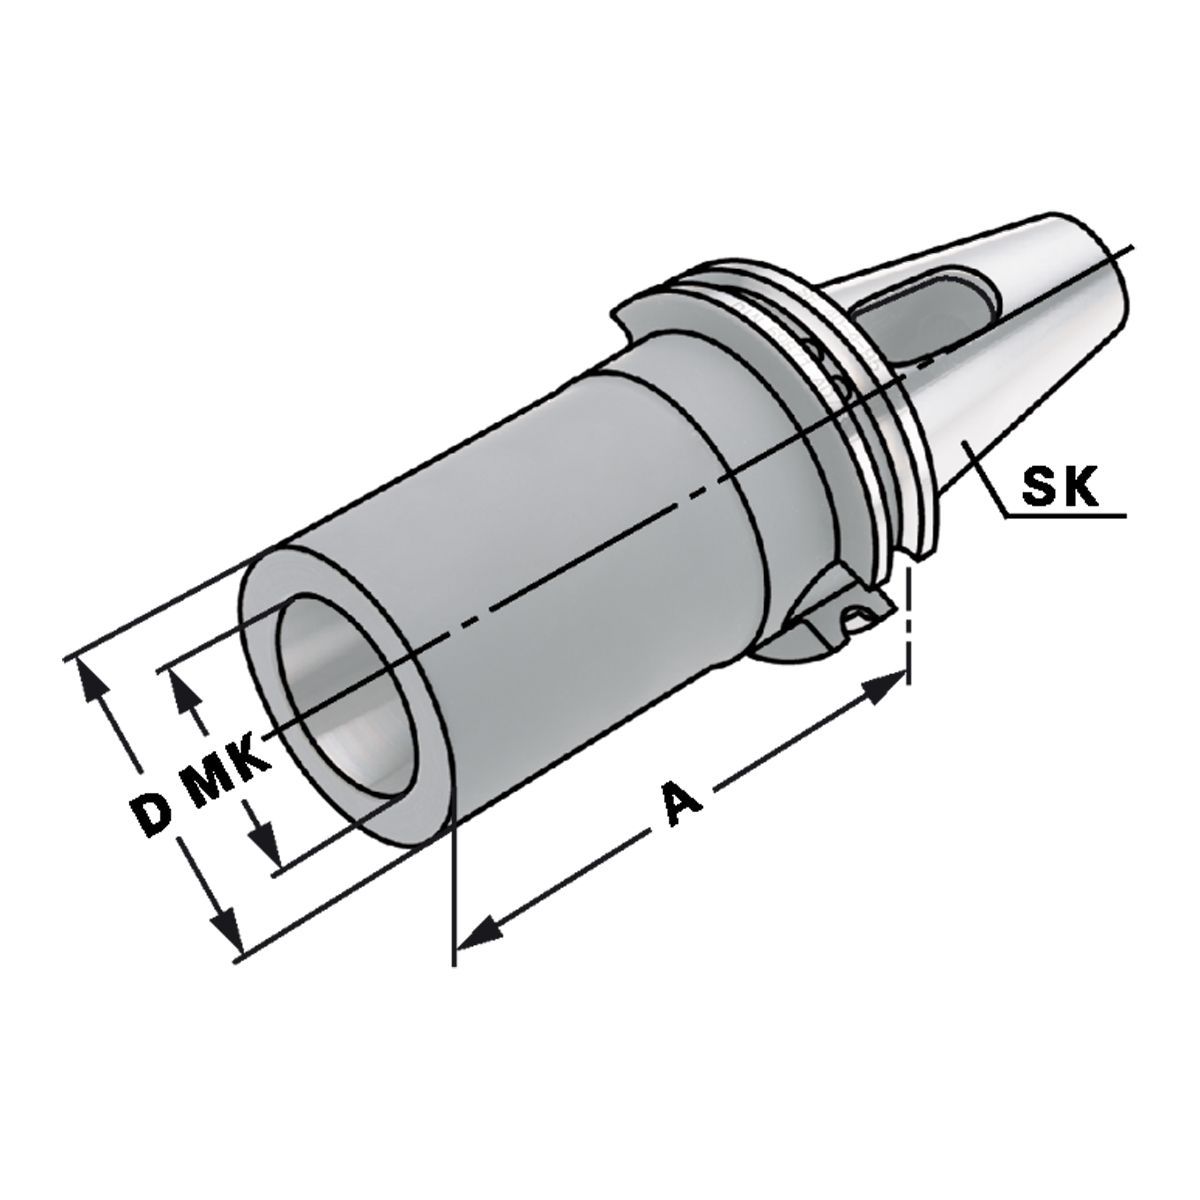 Zwischenhülse SK 30-2-60 für MK mit Austreiblappen DIN 6383